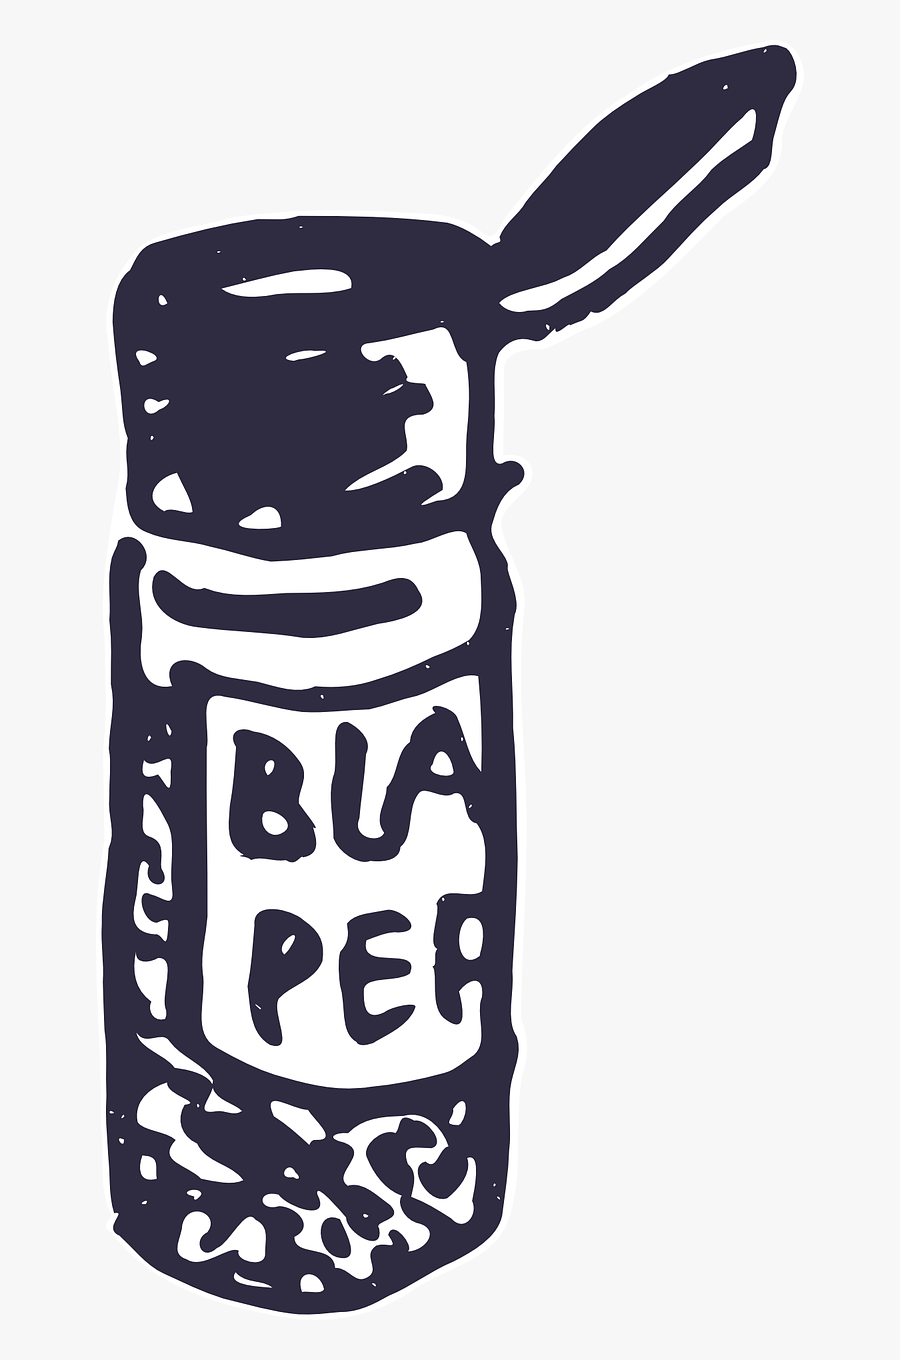 Blackpepper - Pepper Shaker Clipart Black And White, Transparent Clipart